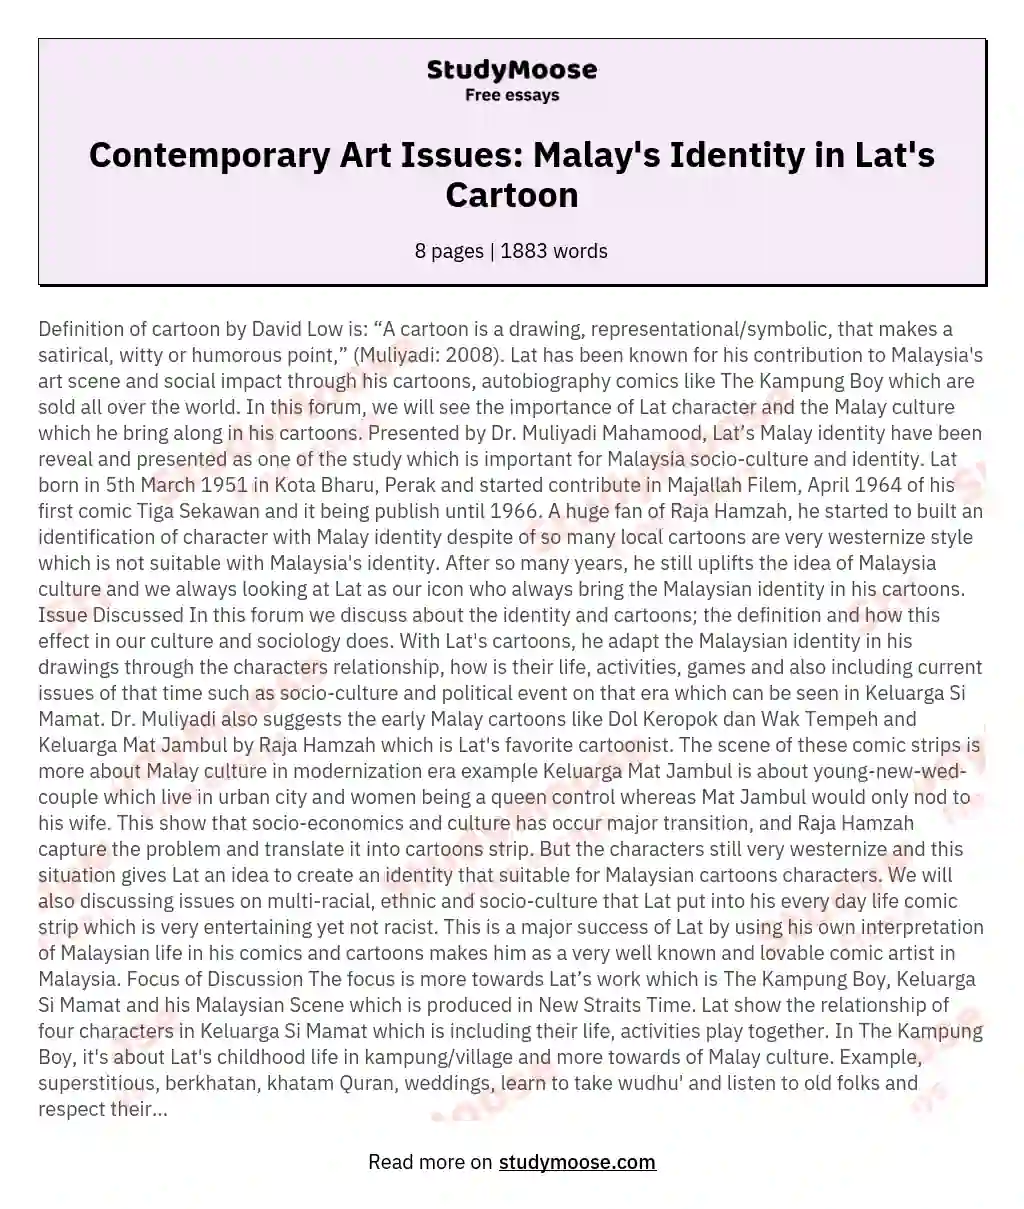 Contemporary Art Issues: Malay's Identity in Lat's Cartoon essay